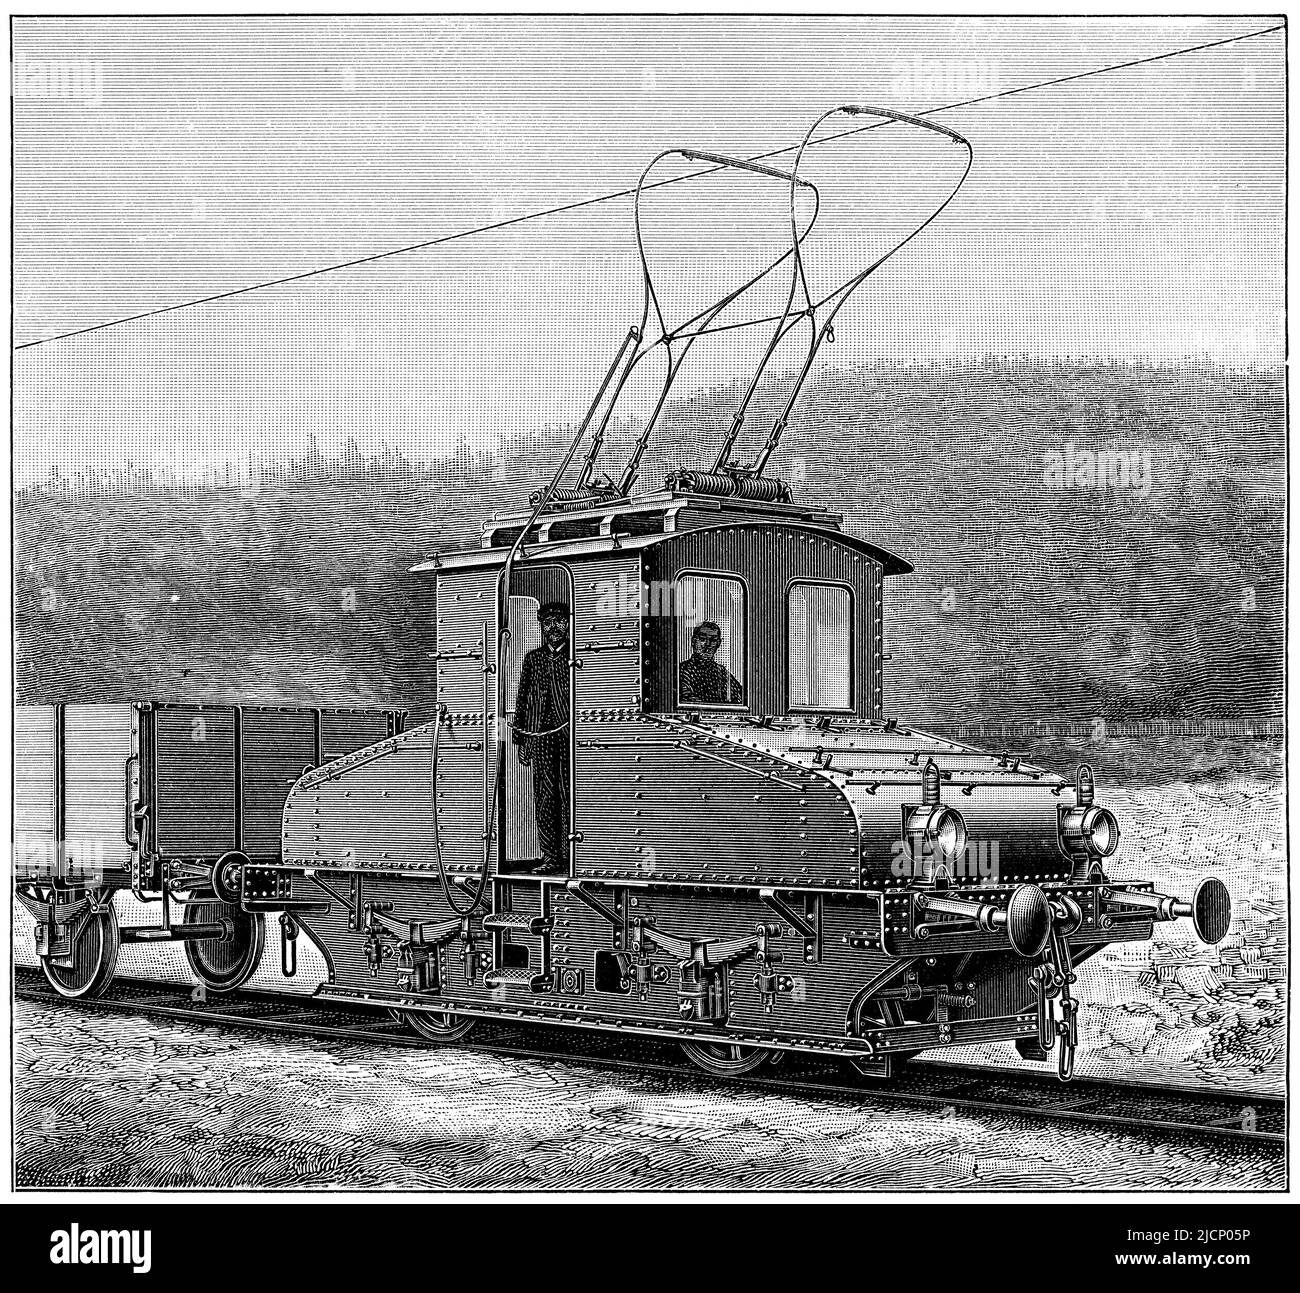 Locomotora eléctrica de calibre estándar. Publicación del libro 'Meyers Konversations-Lexikon', Volumen 2, Leipzig, Alemania, 1910 Foto de stock